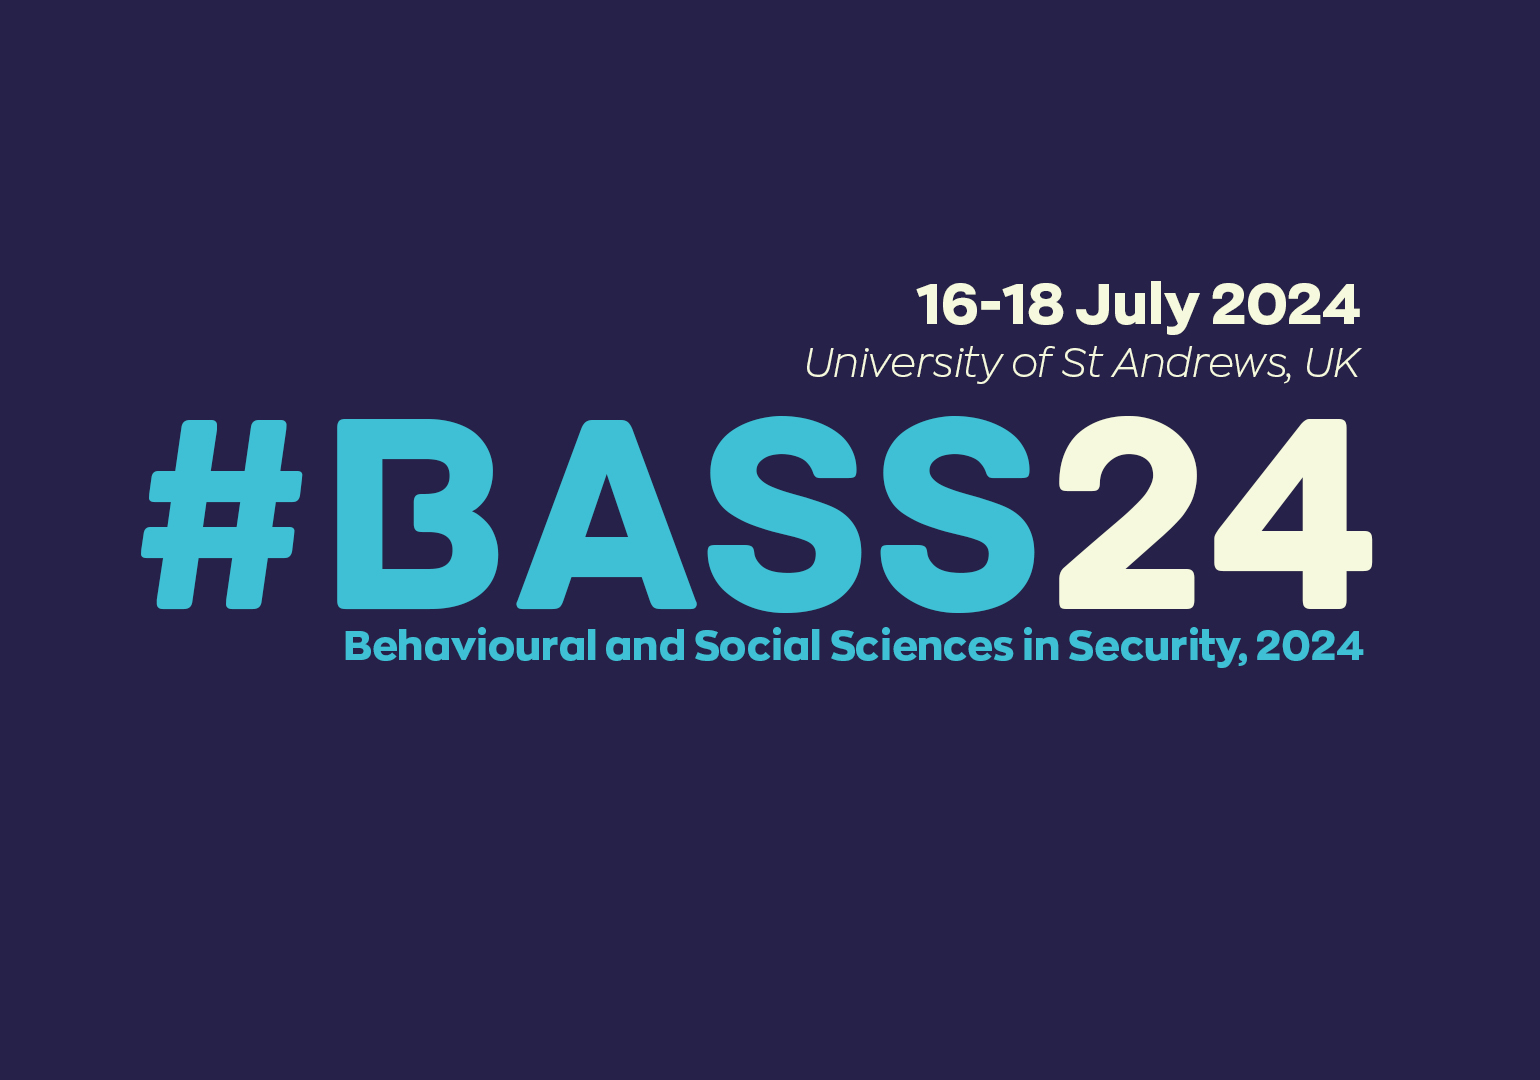 CREST BASS24 Conference Registration